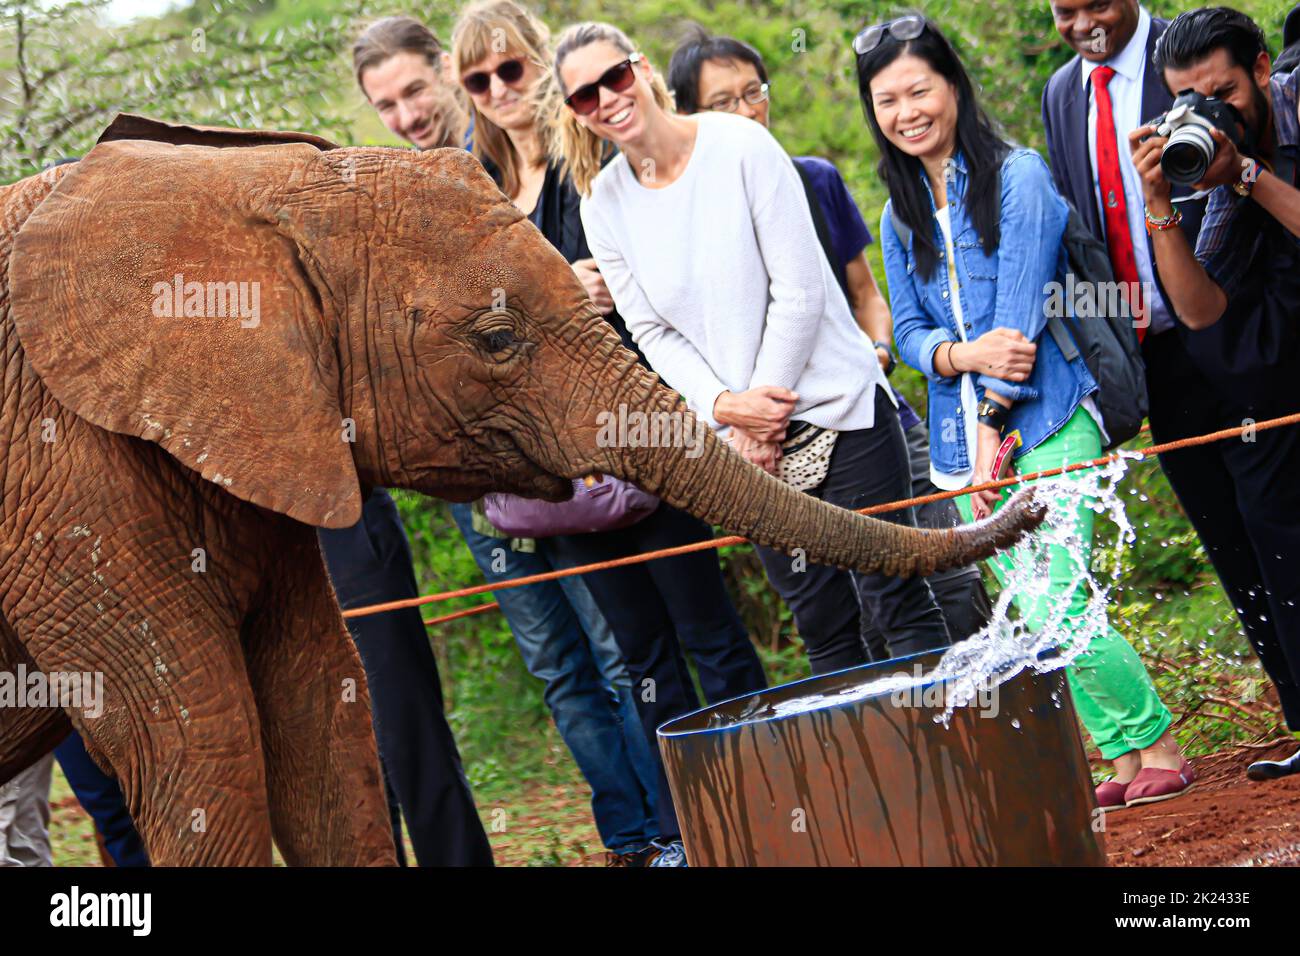 Nairobi, Kenia - 28 de octubre de 28 2017: Turistas que buscan elefantes y toman fotos en el David Sheldrick Wildlife Trust Center (orfanato de elefantes) Foto de stock